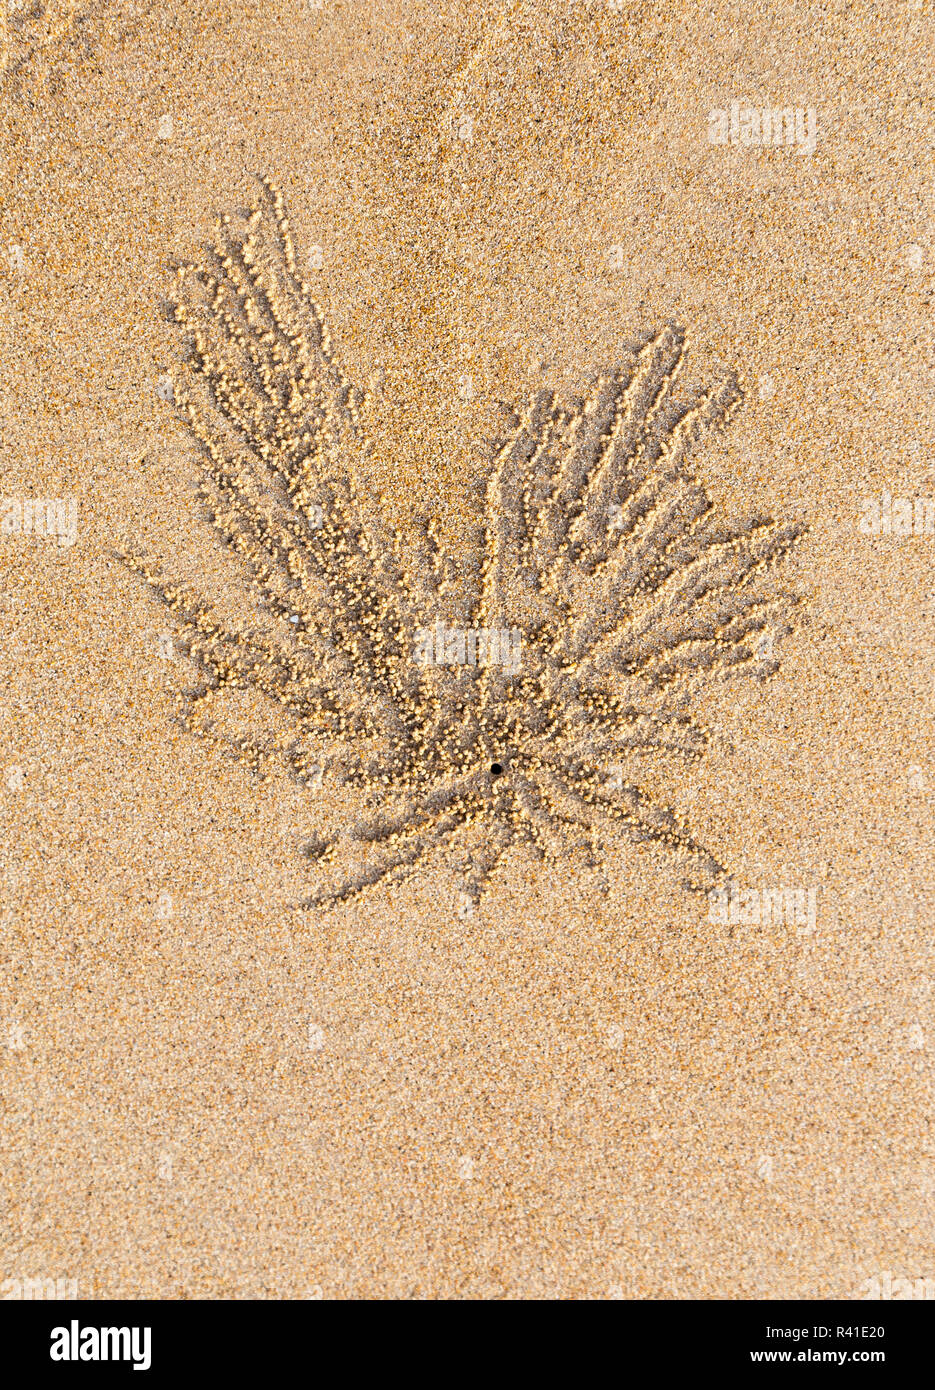 Boules de sable et les trous de crabe plage vivant Banque D'Images